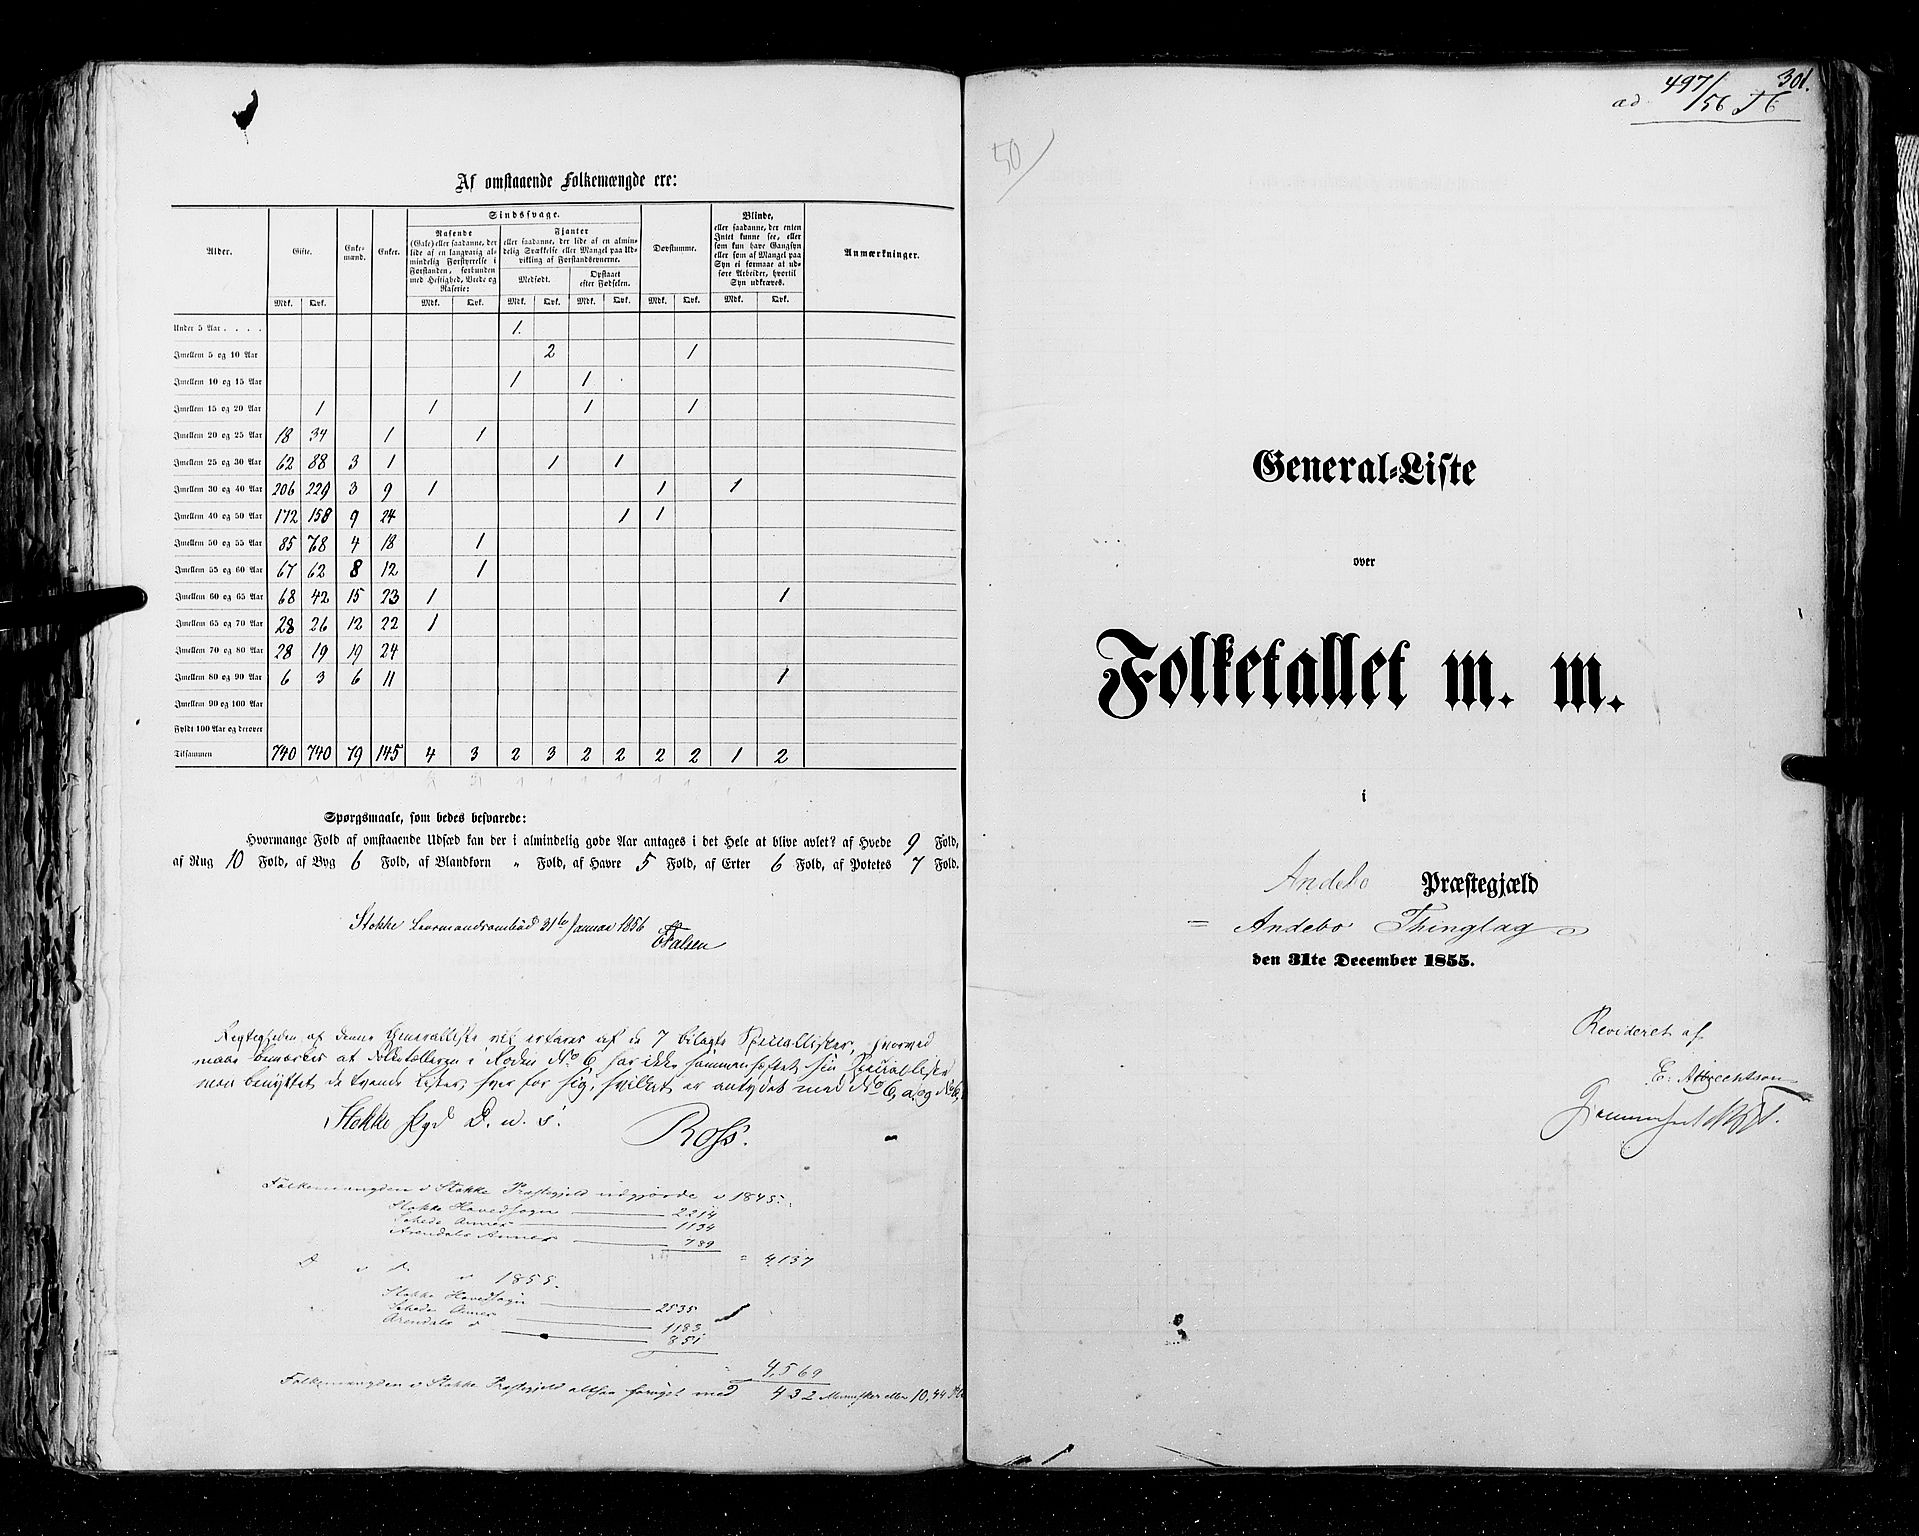 RA, Census 1855, vol. 2: Kristians amt, Buskerud amt og Jarlsberg og Larvik amt, 1855, p. 301